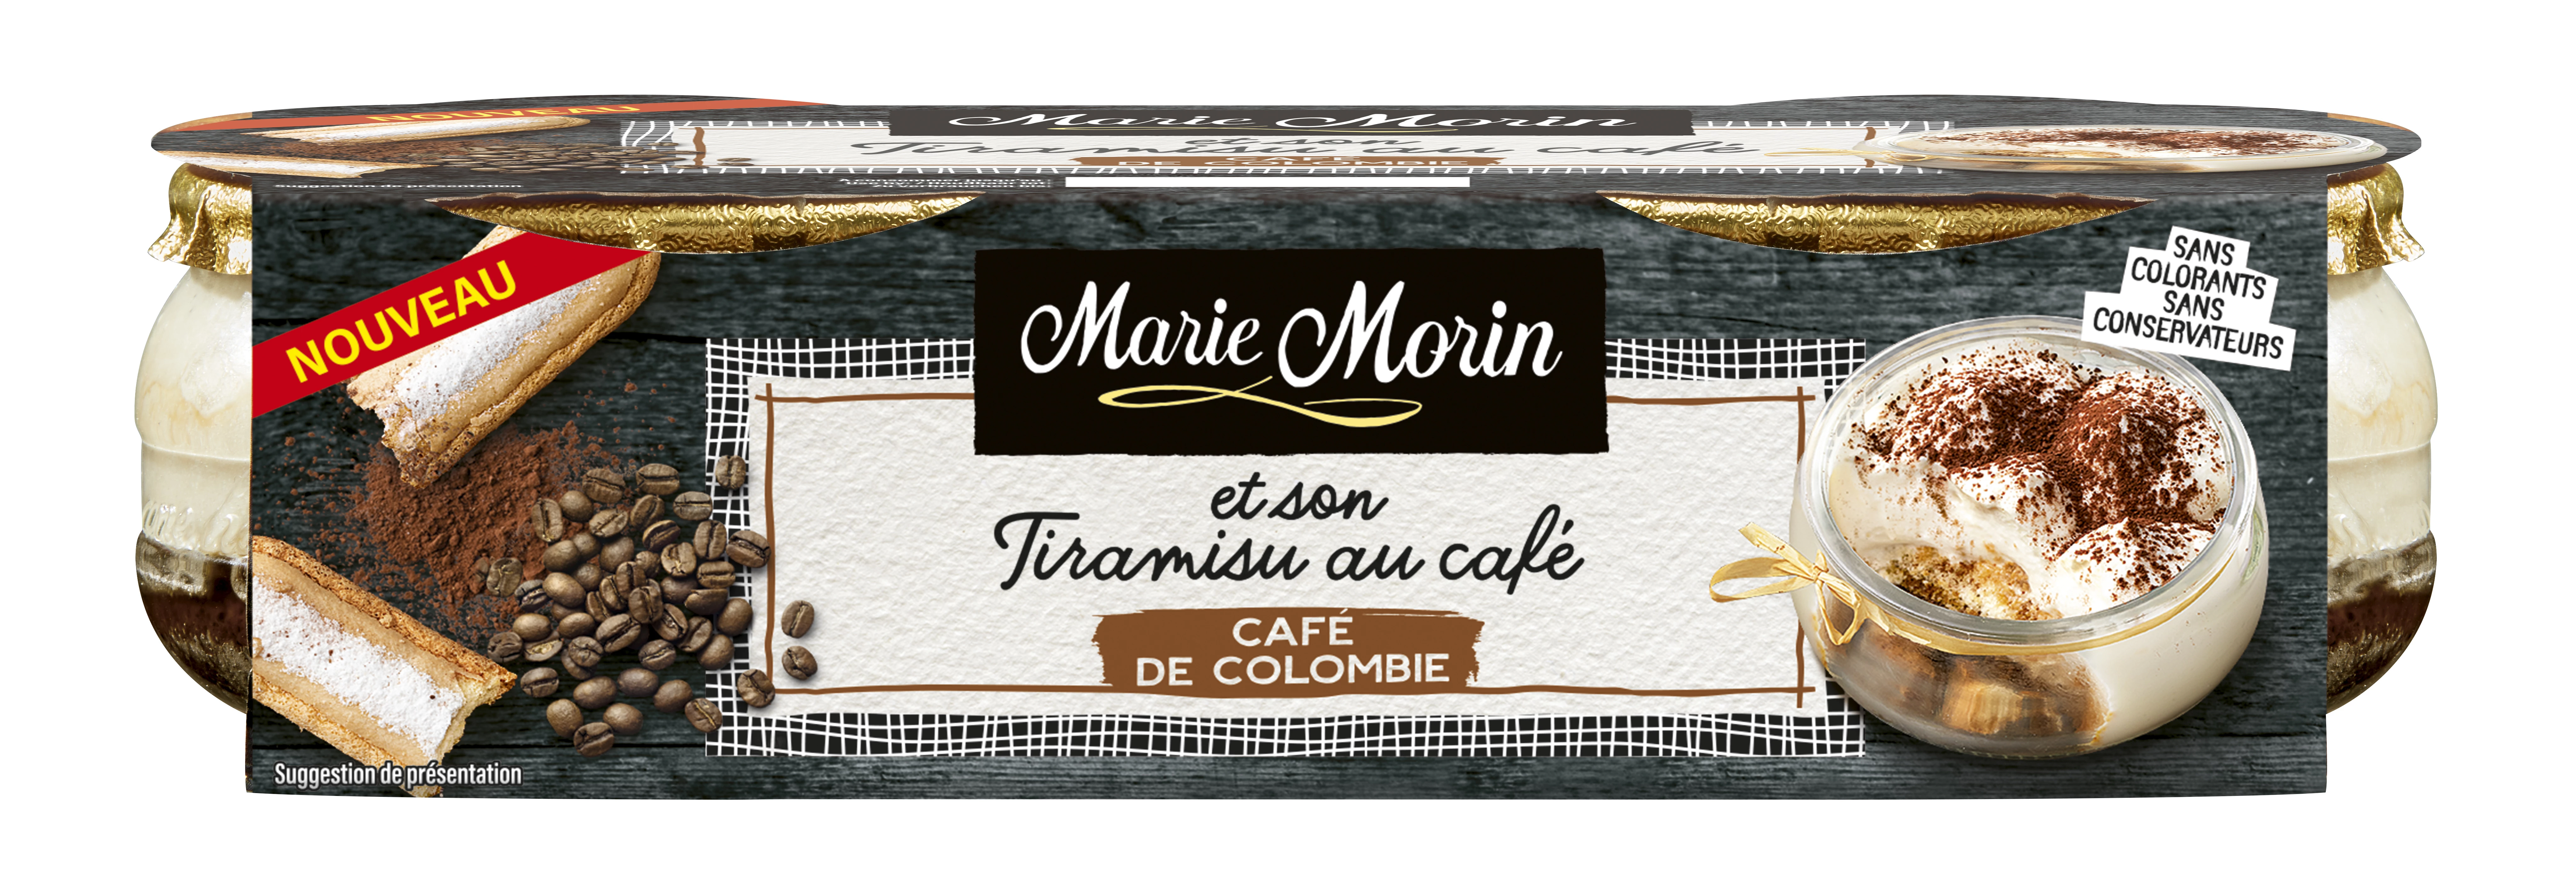 Mmorin Tiramisu Cafe 2x80g